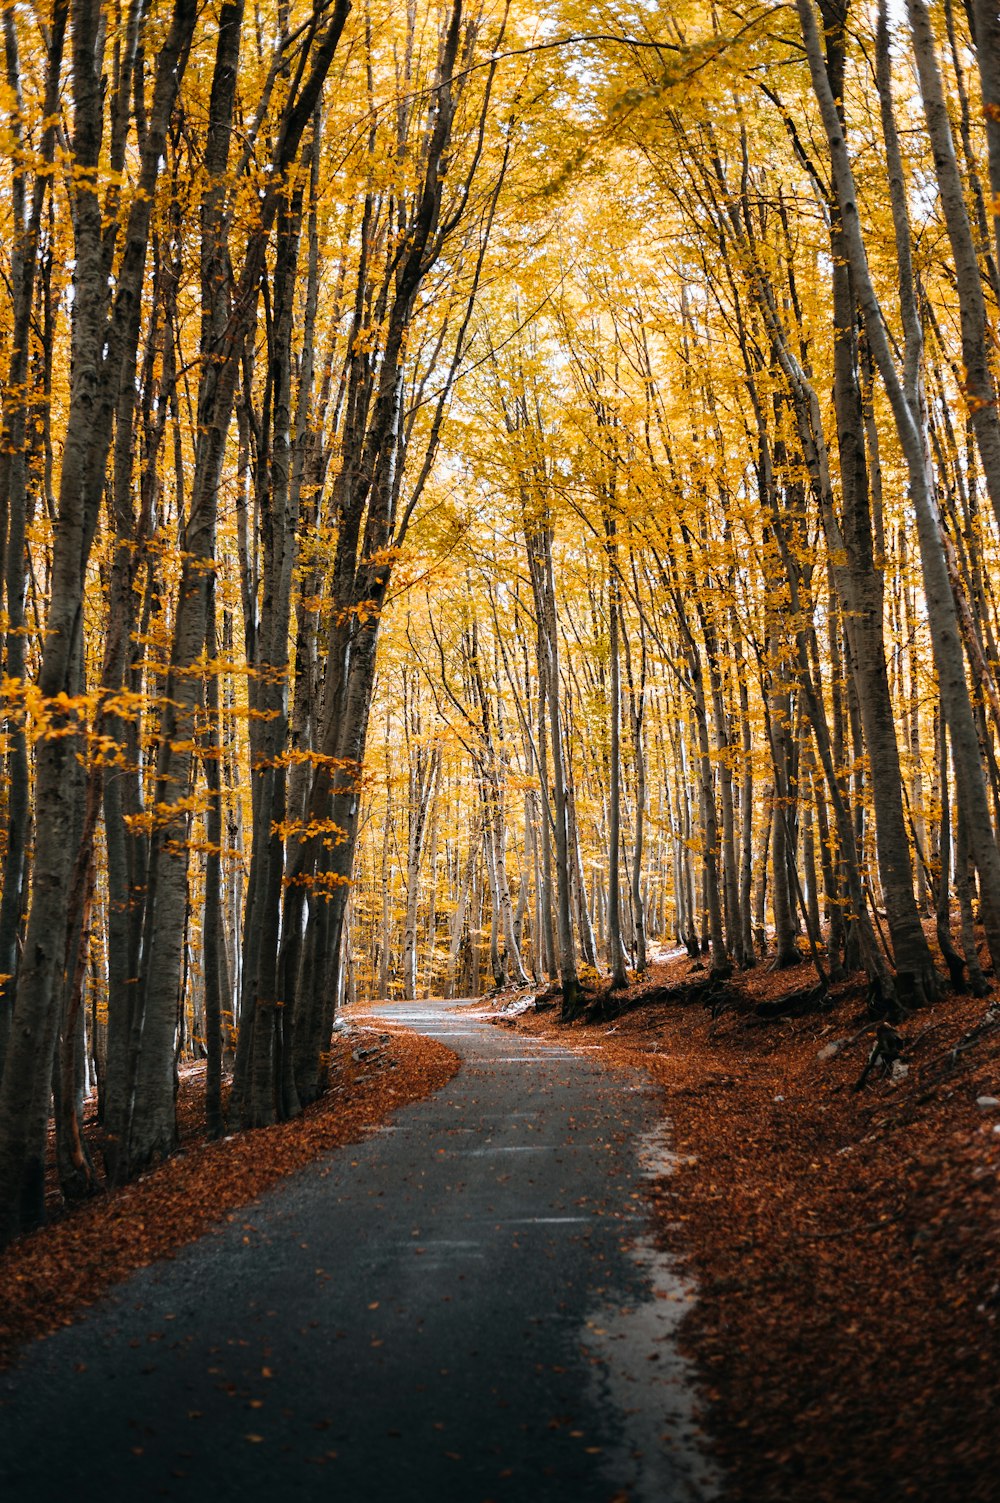 노란 잎사귀가 있는 나무들로 둘러싸인 길